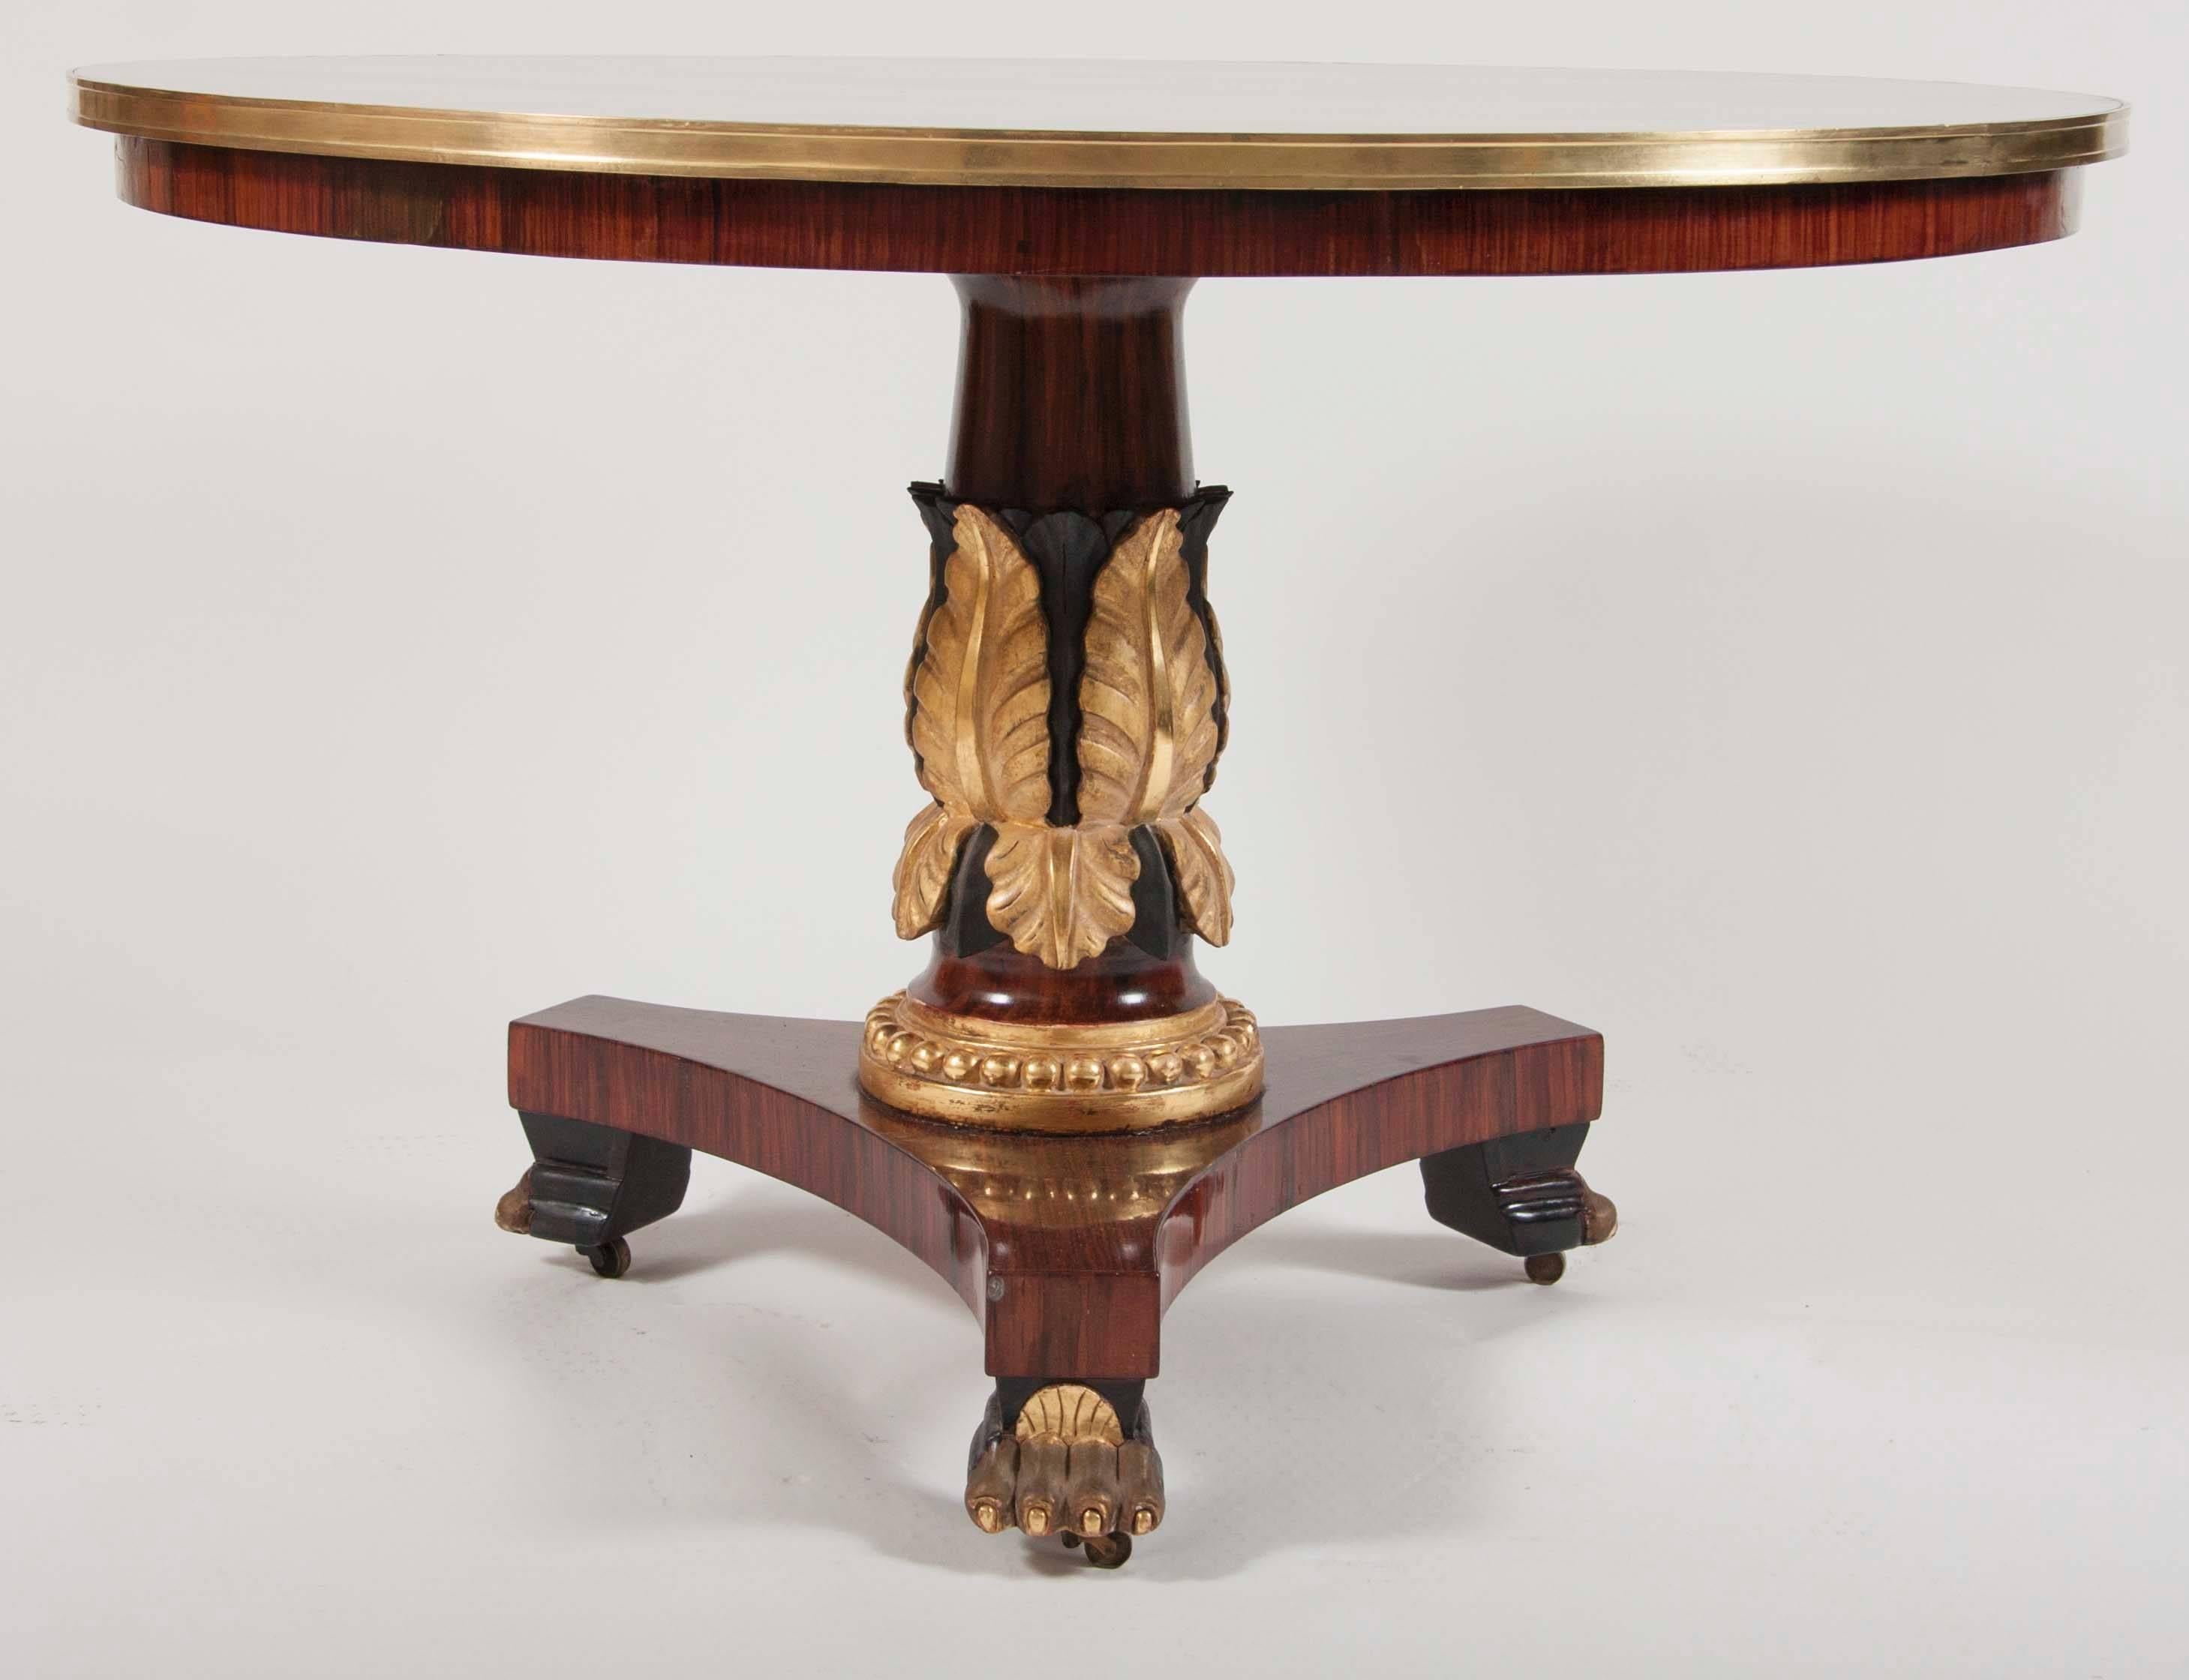 Table centrale en acajou de style Régence anglais, avec un piédestal sculpté de feuilles dorées et un dessus marqueté segmenté.